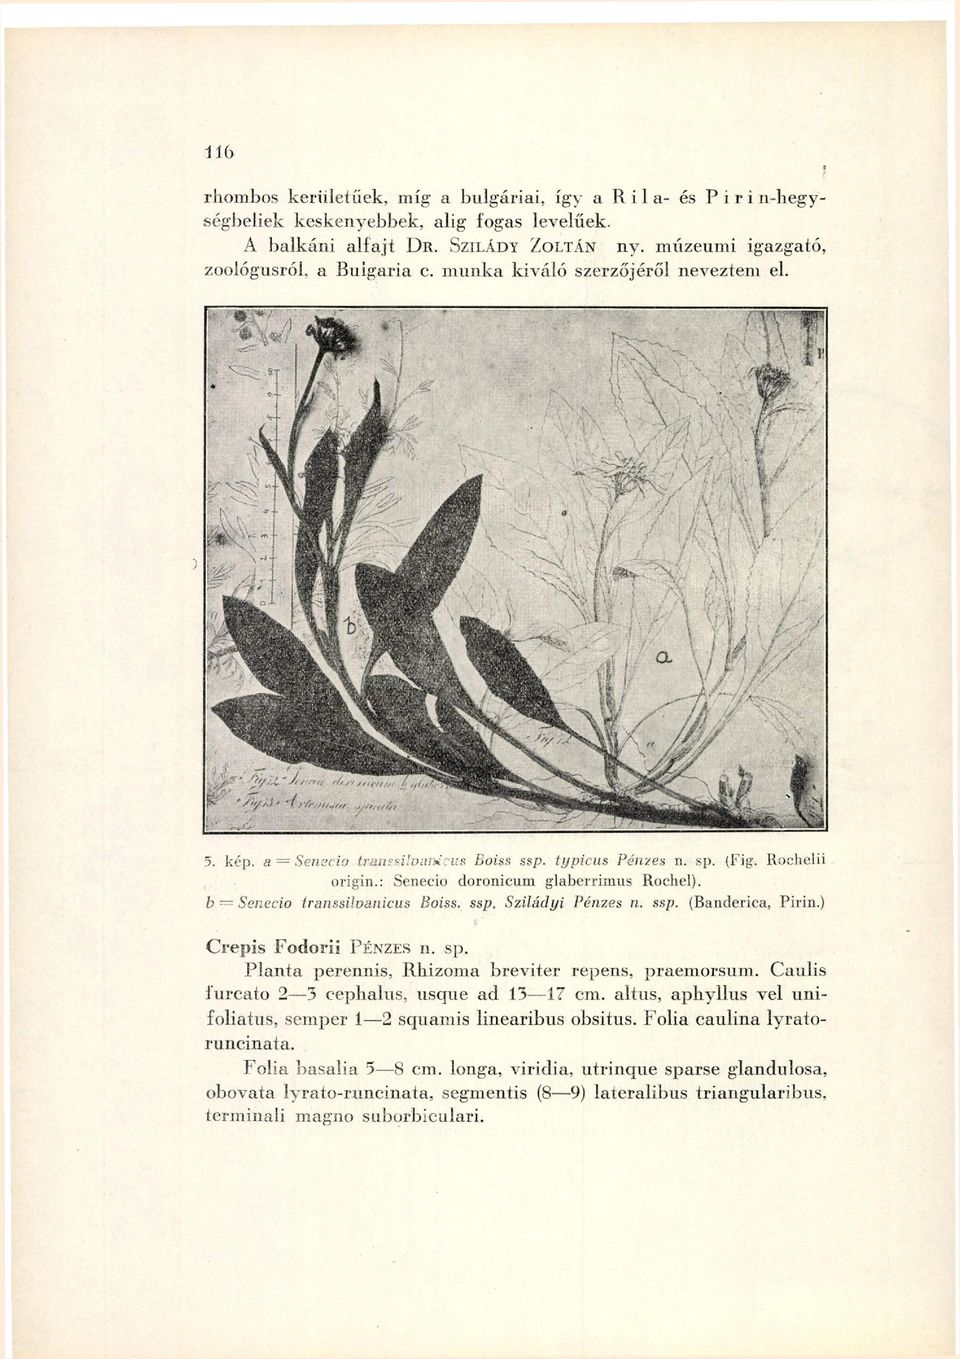 : Senecio doronicum glaberrimus Rochel). b Senecio transsilvanicus Boiss. ssp. Sziládyi Pénzes n. ssp. (Banderica, Pirin.) Crepis Fodorii PÉNZES n. sp.